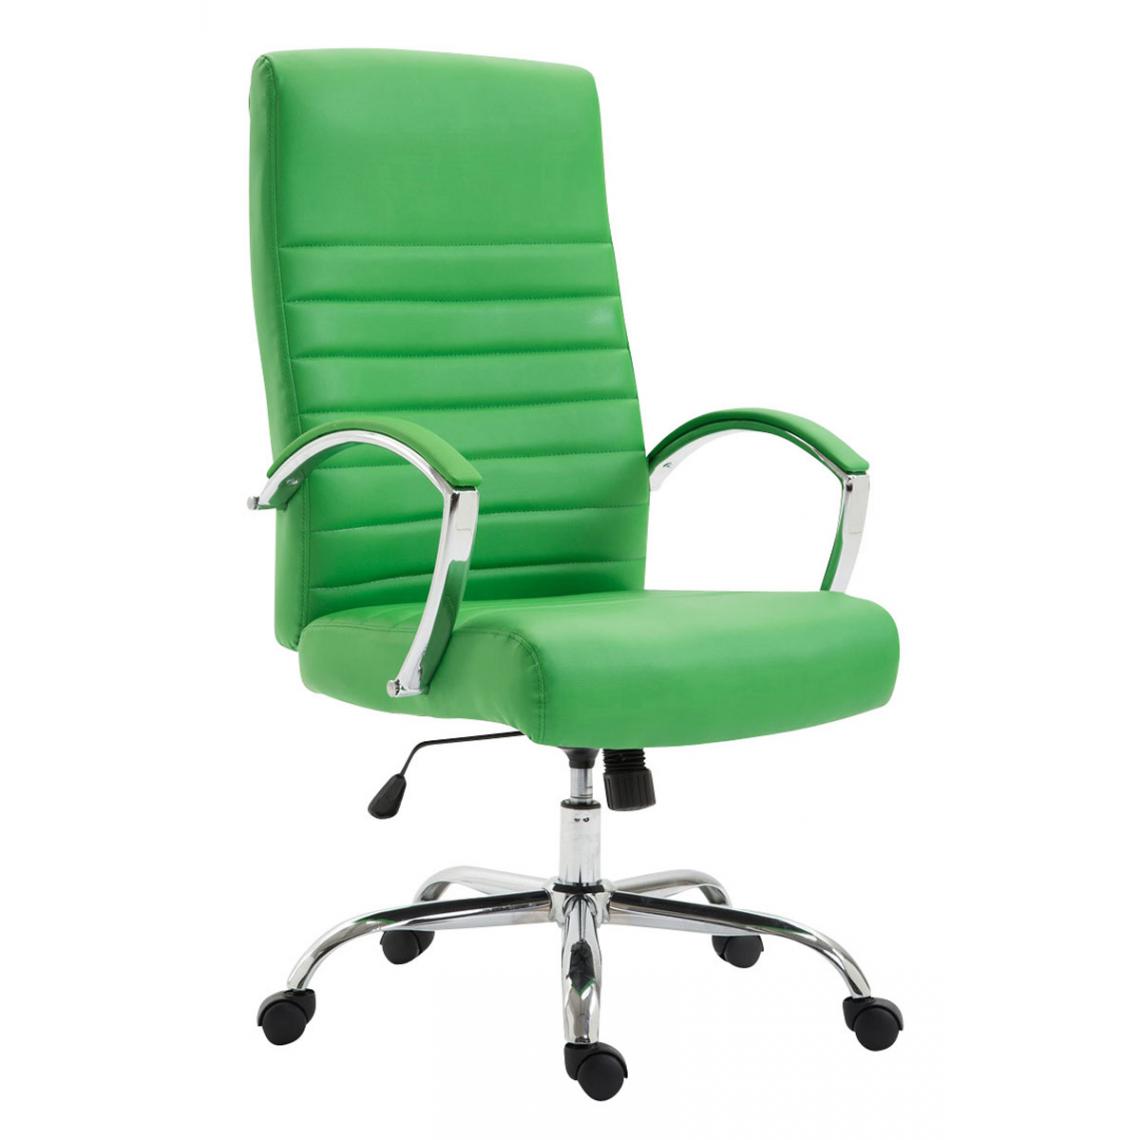 Icaverne - sublime Chaise de bureau categorie Dakar simili cuir couleur vert - Chaises